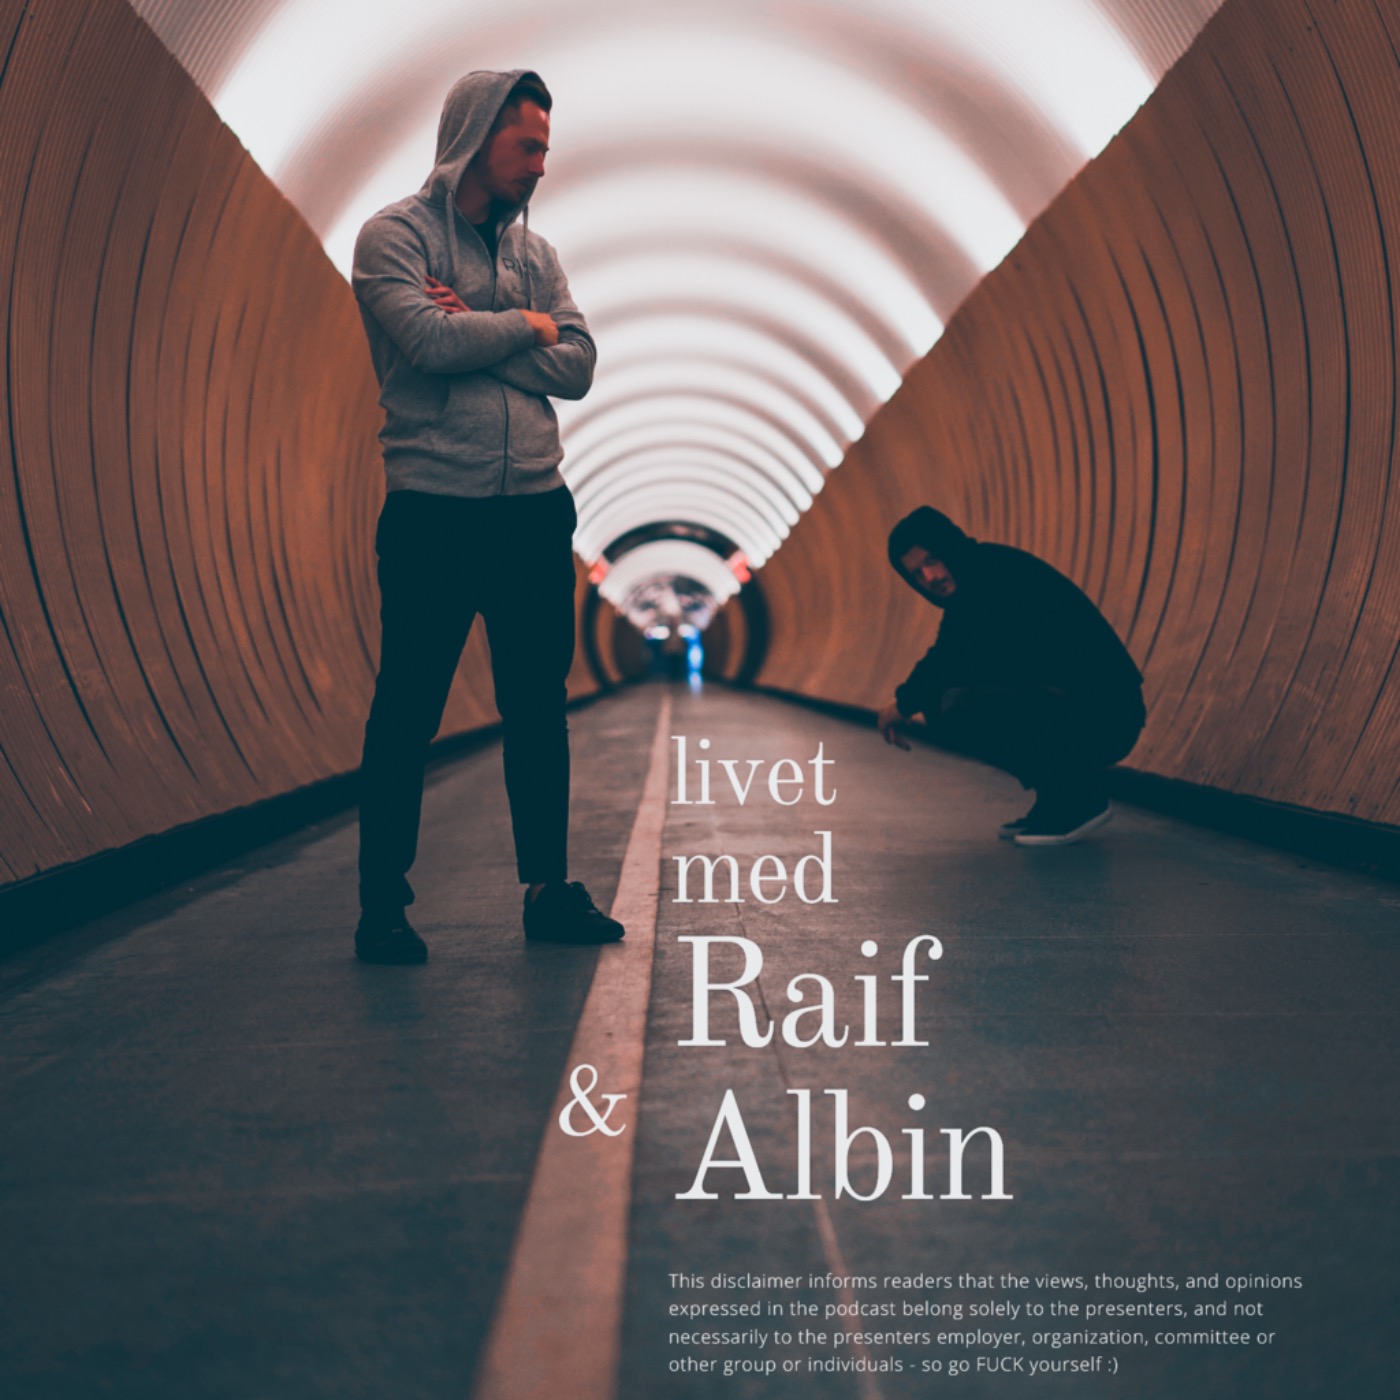 Livet med Raif & Albin